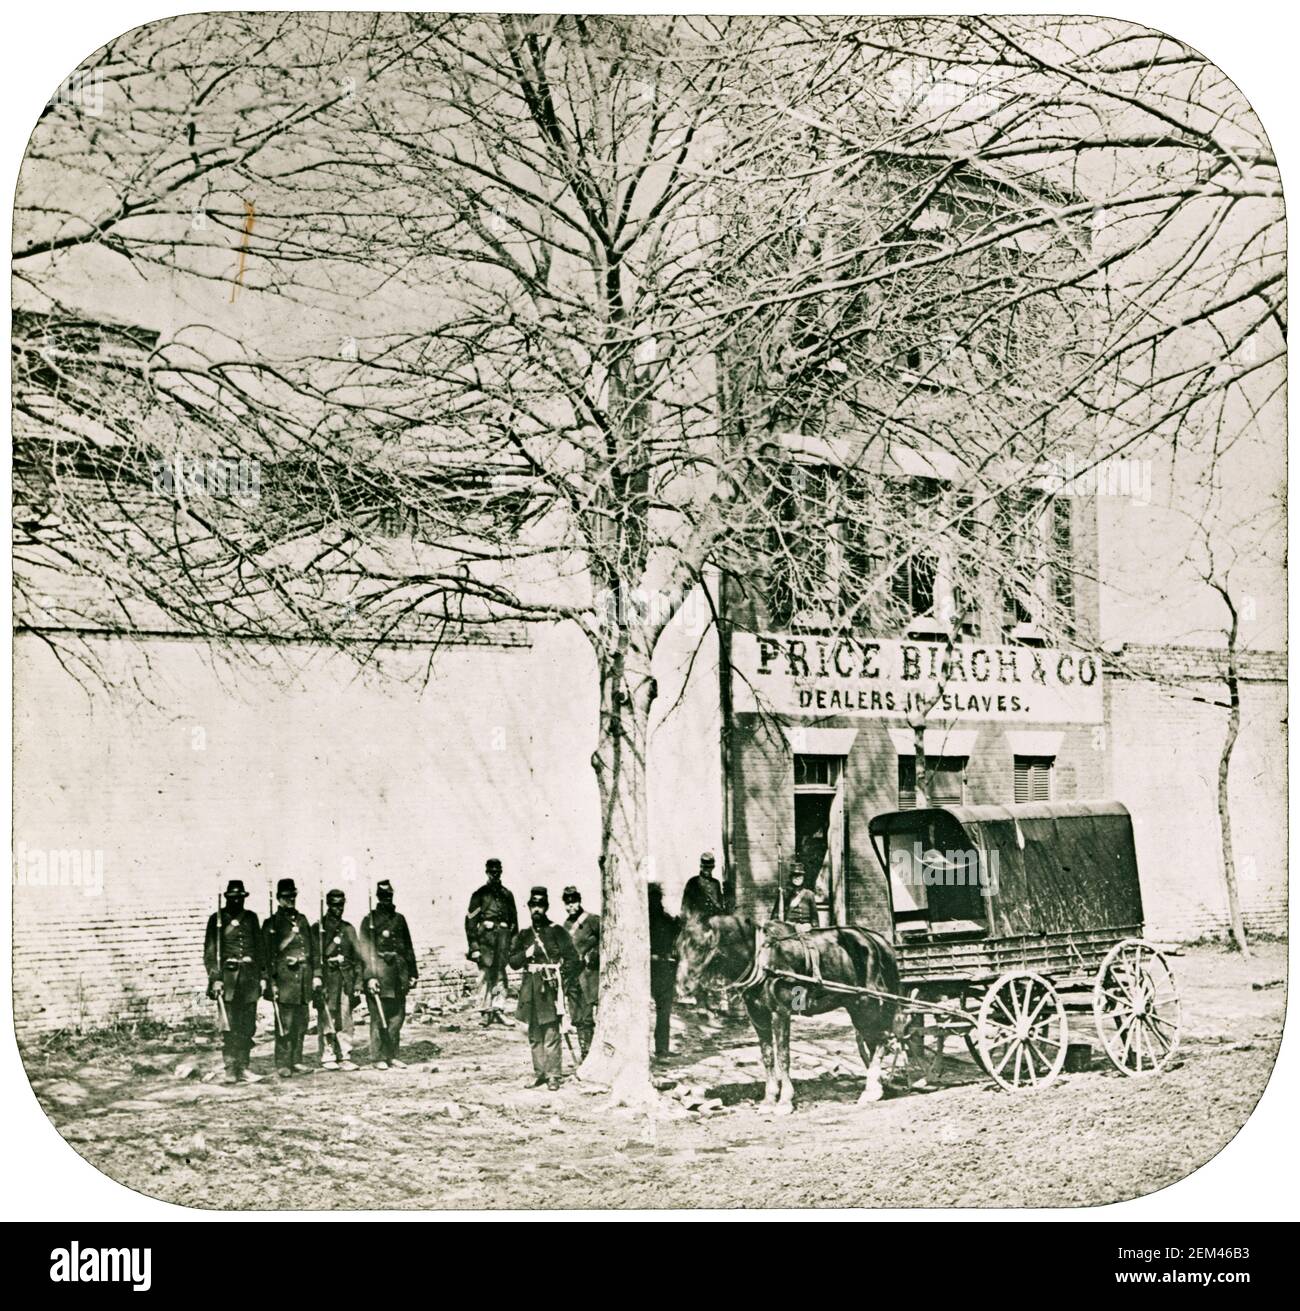 Laternenfolie mit den Geschäftsräumen der amerikanischen Sklavenhändler, Price Birch & Co in Alexandria, Virginia, Foto: Mathew Brady, 1862 Stockfoto